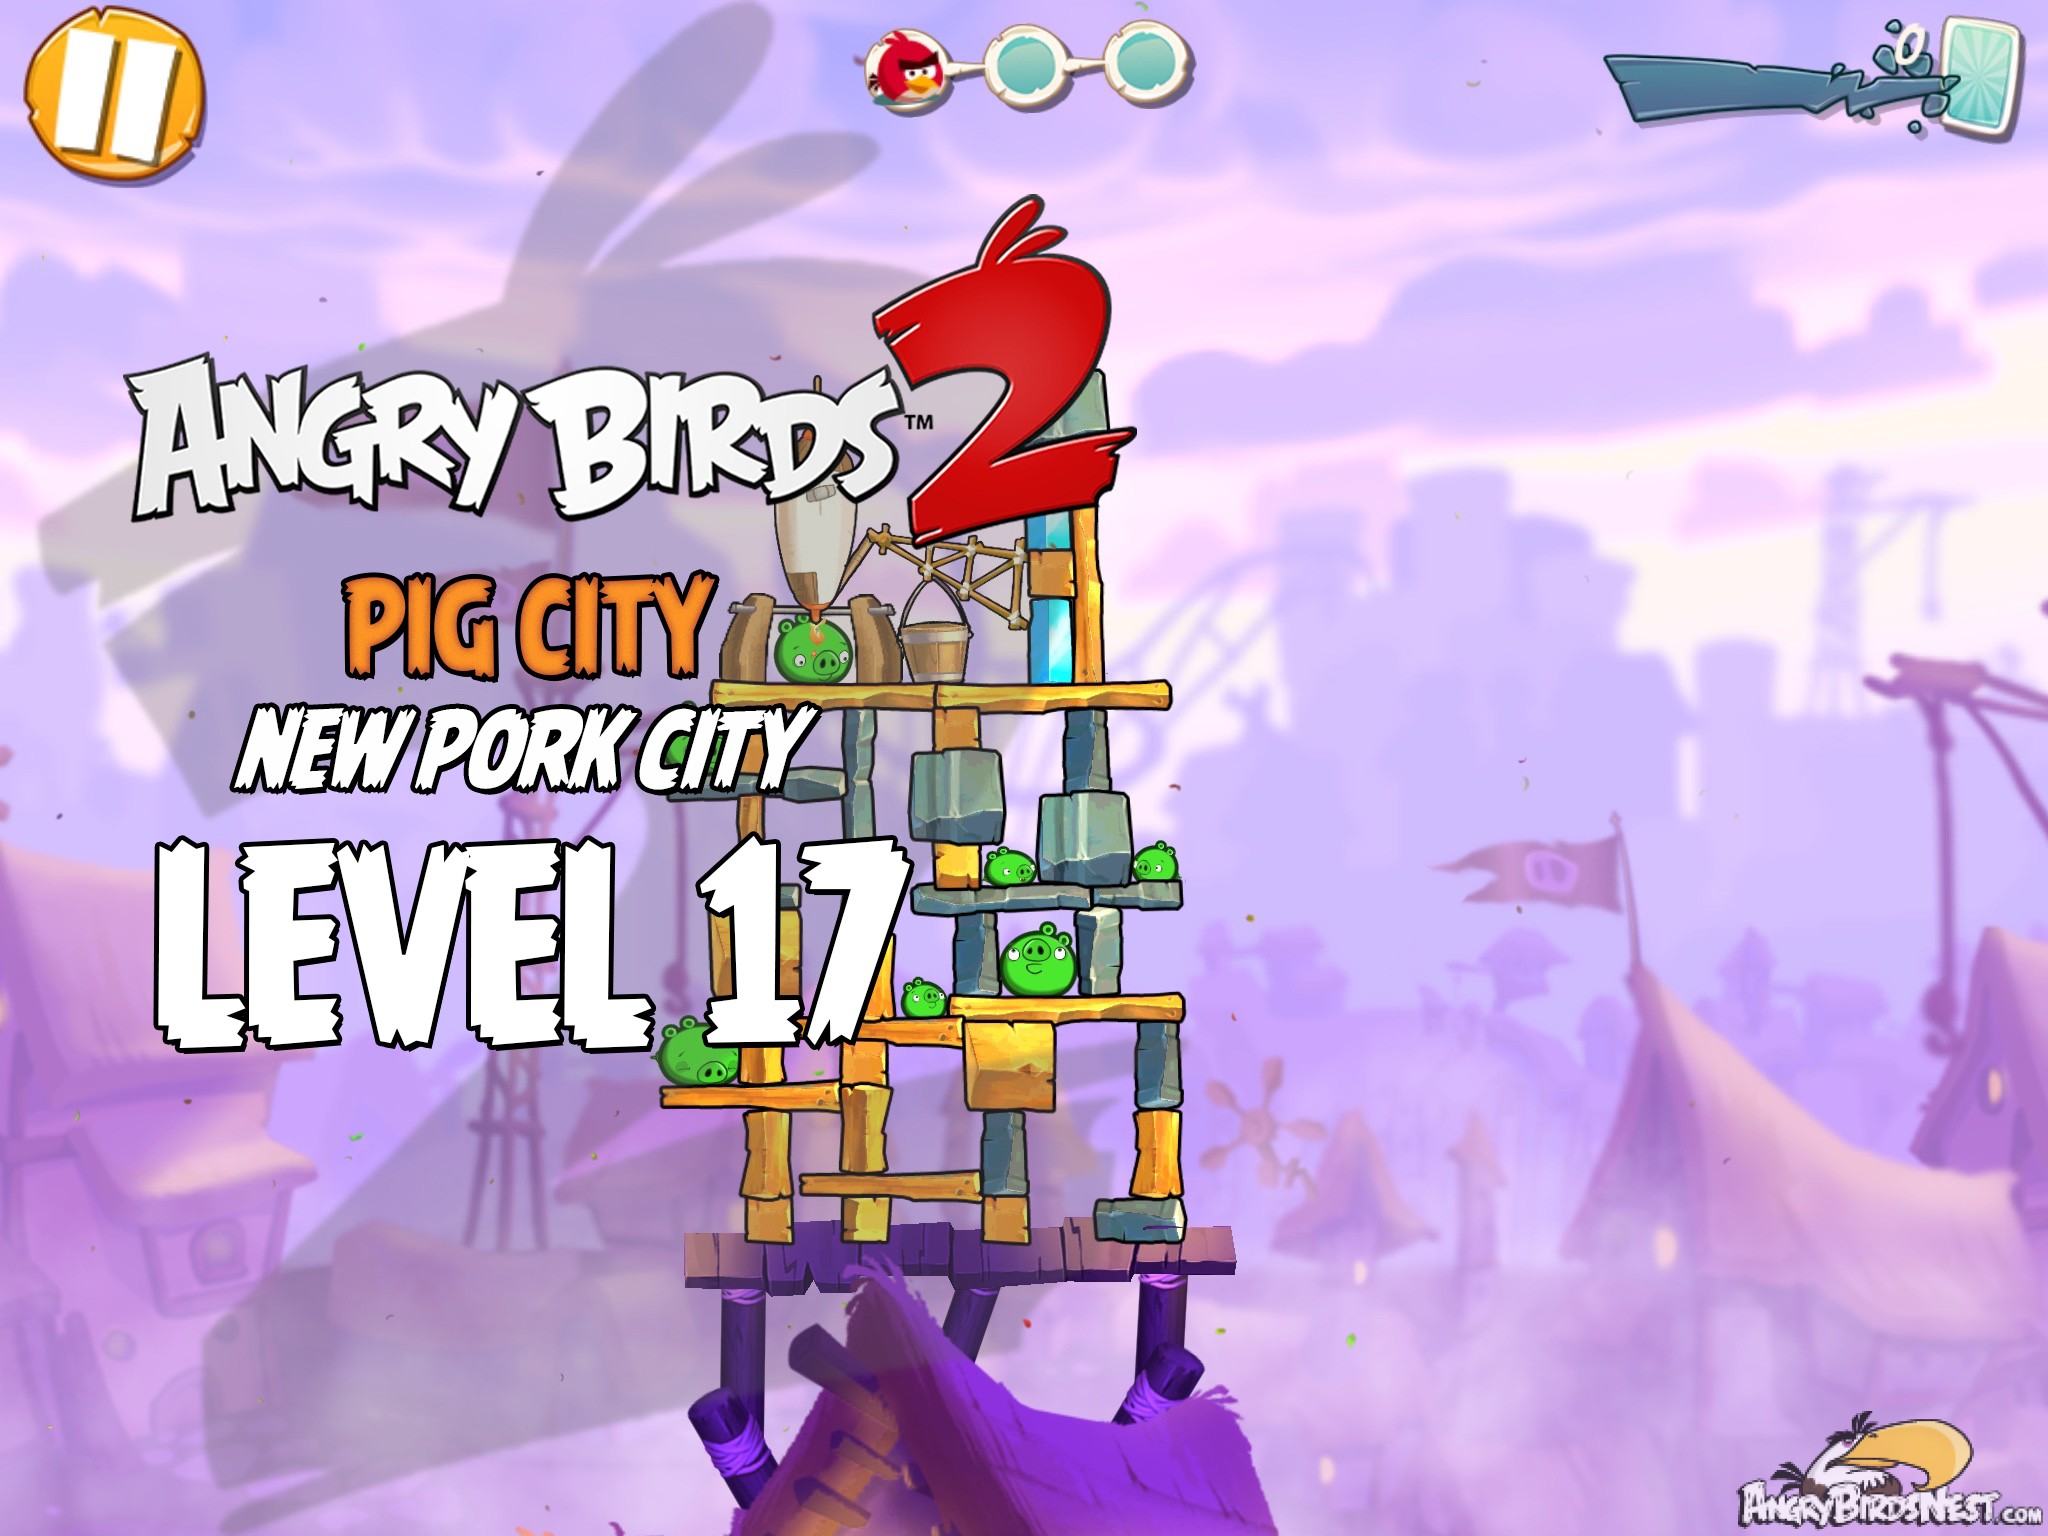 Angry Birds 2 Pig City New Pork City Level 17